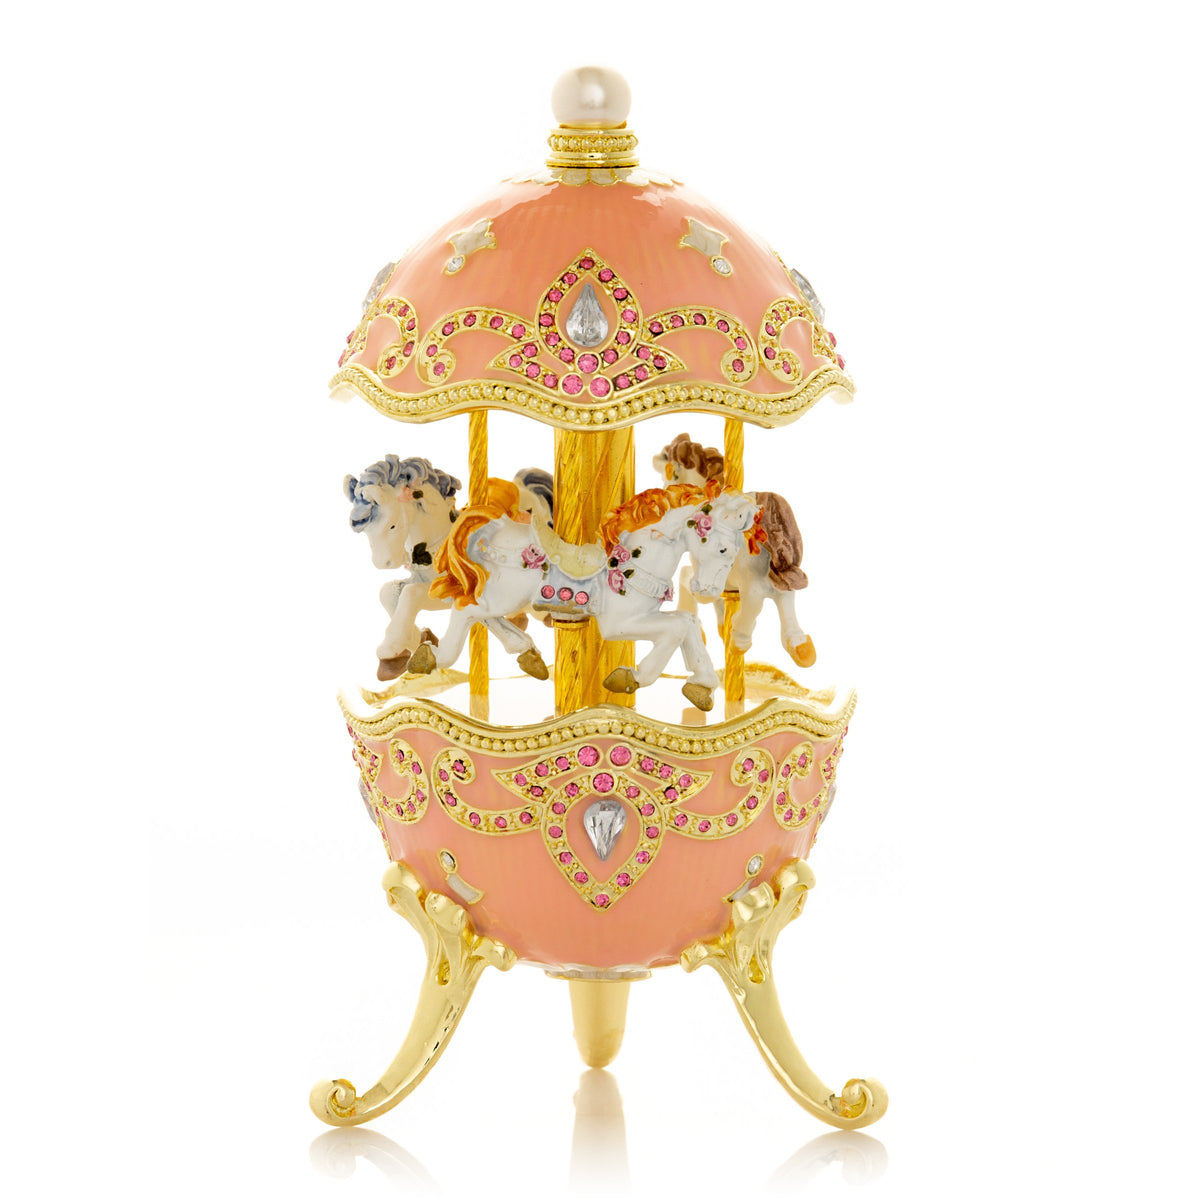 Oeuf de Fabergé rose avec carrousel à chevaux